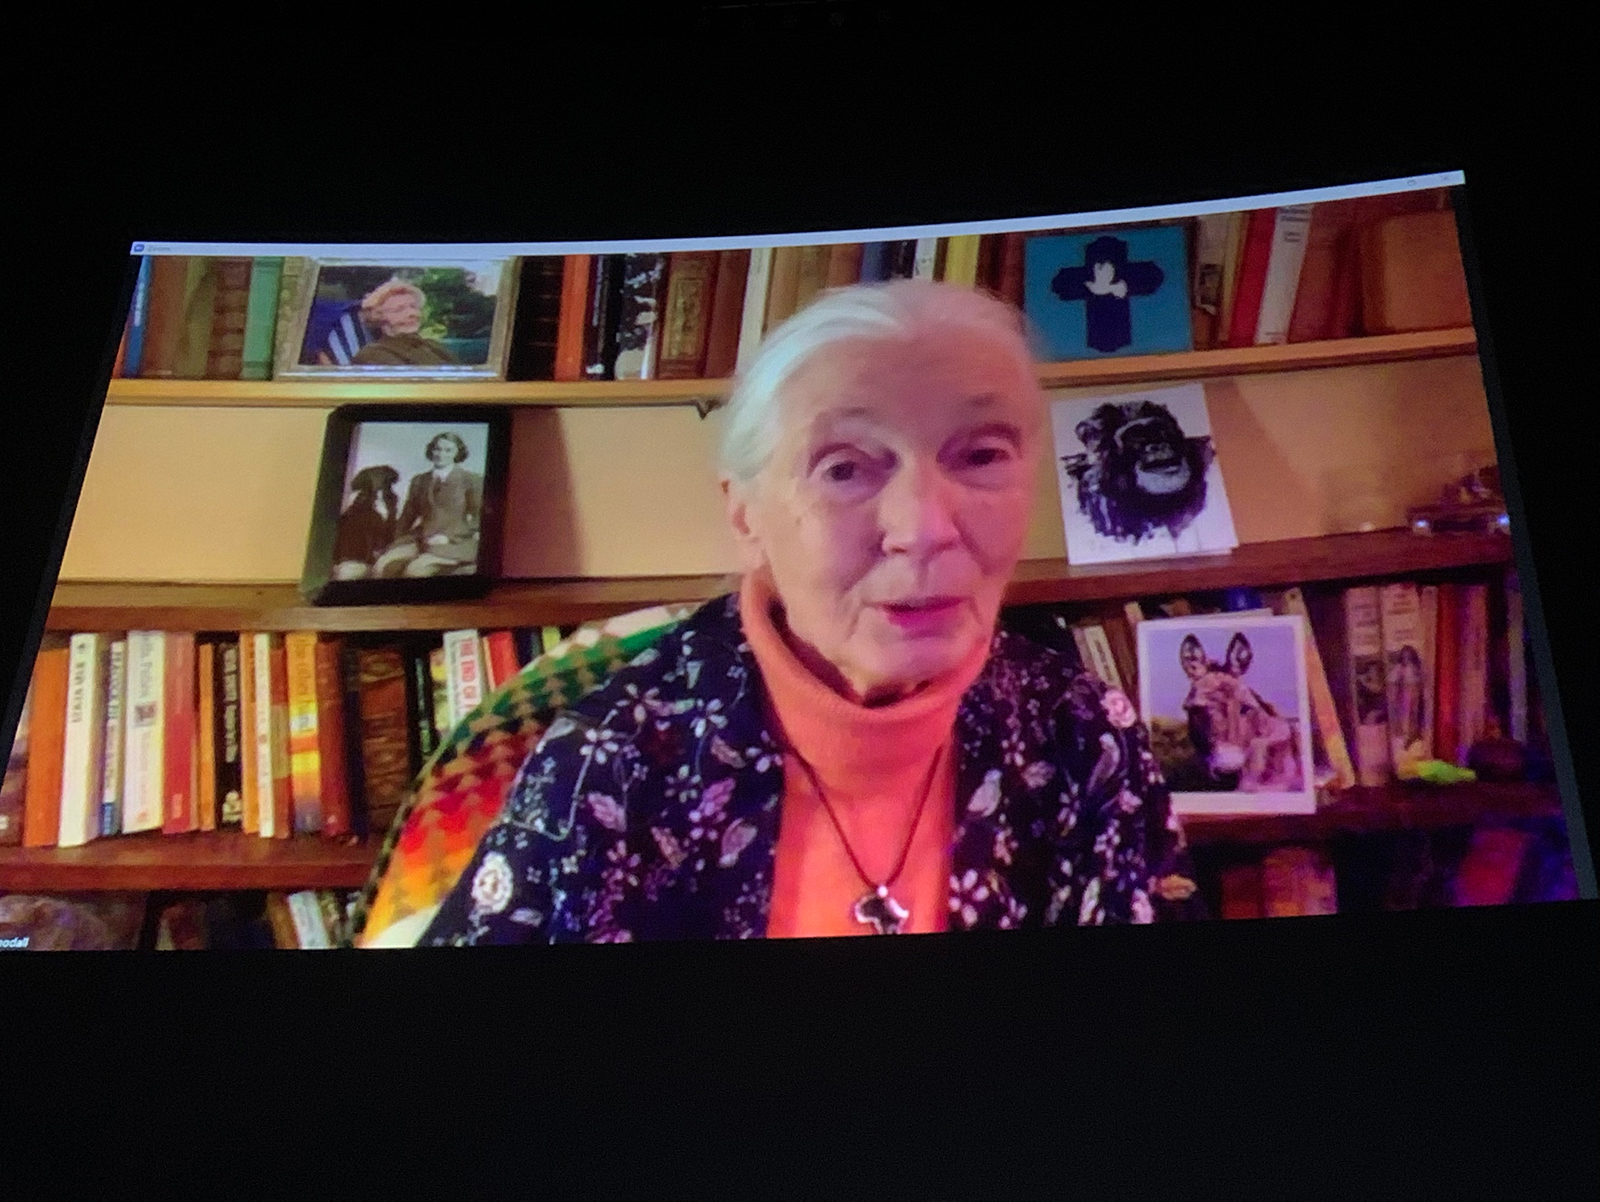 Jane Goodall speaking via Zoom at COP26.